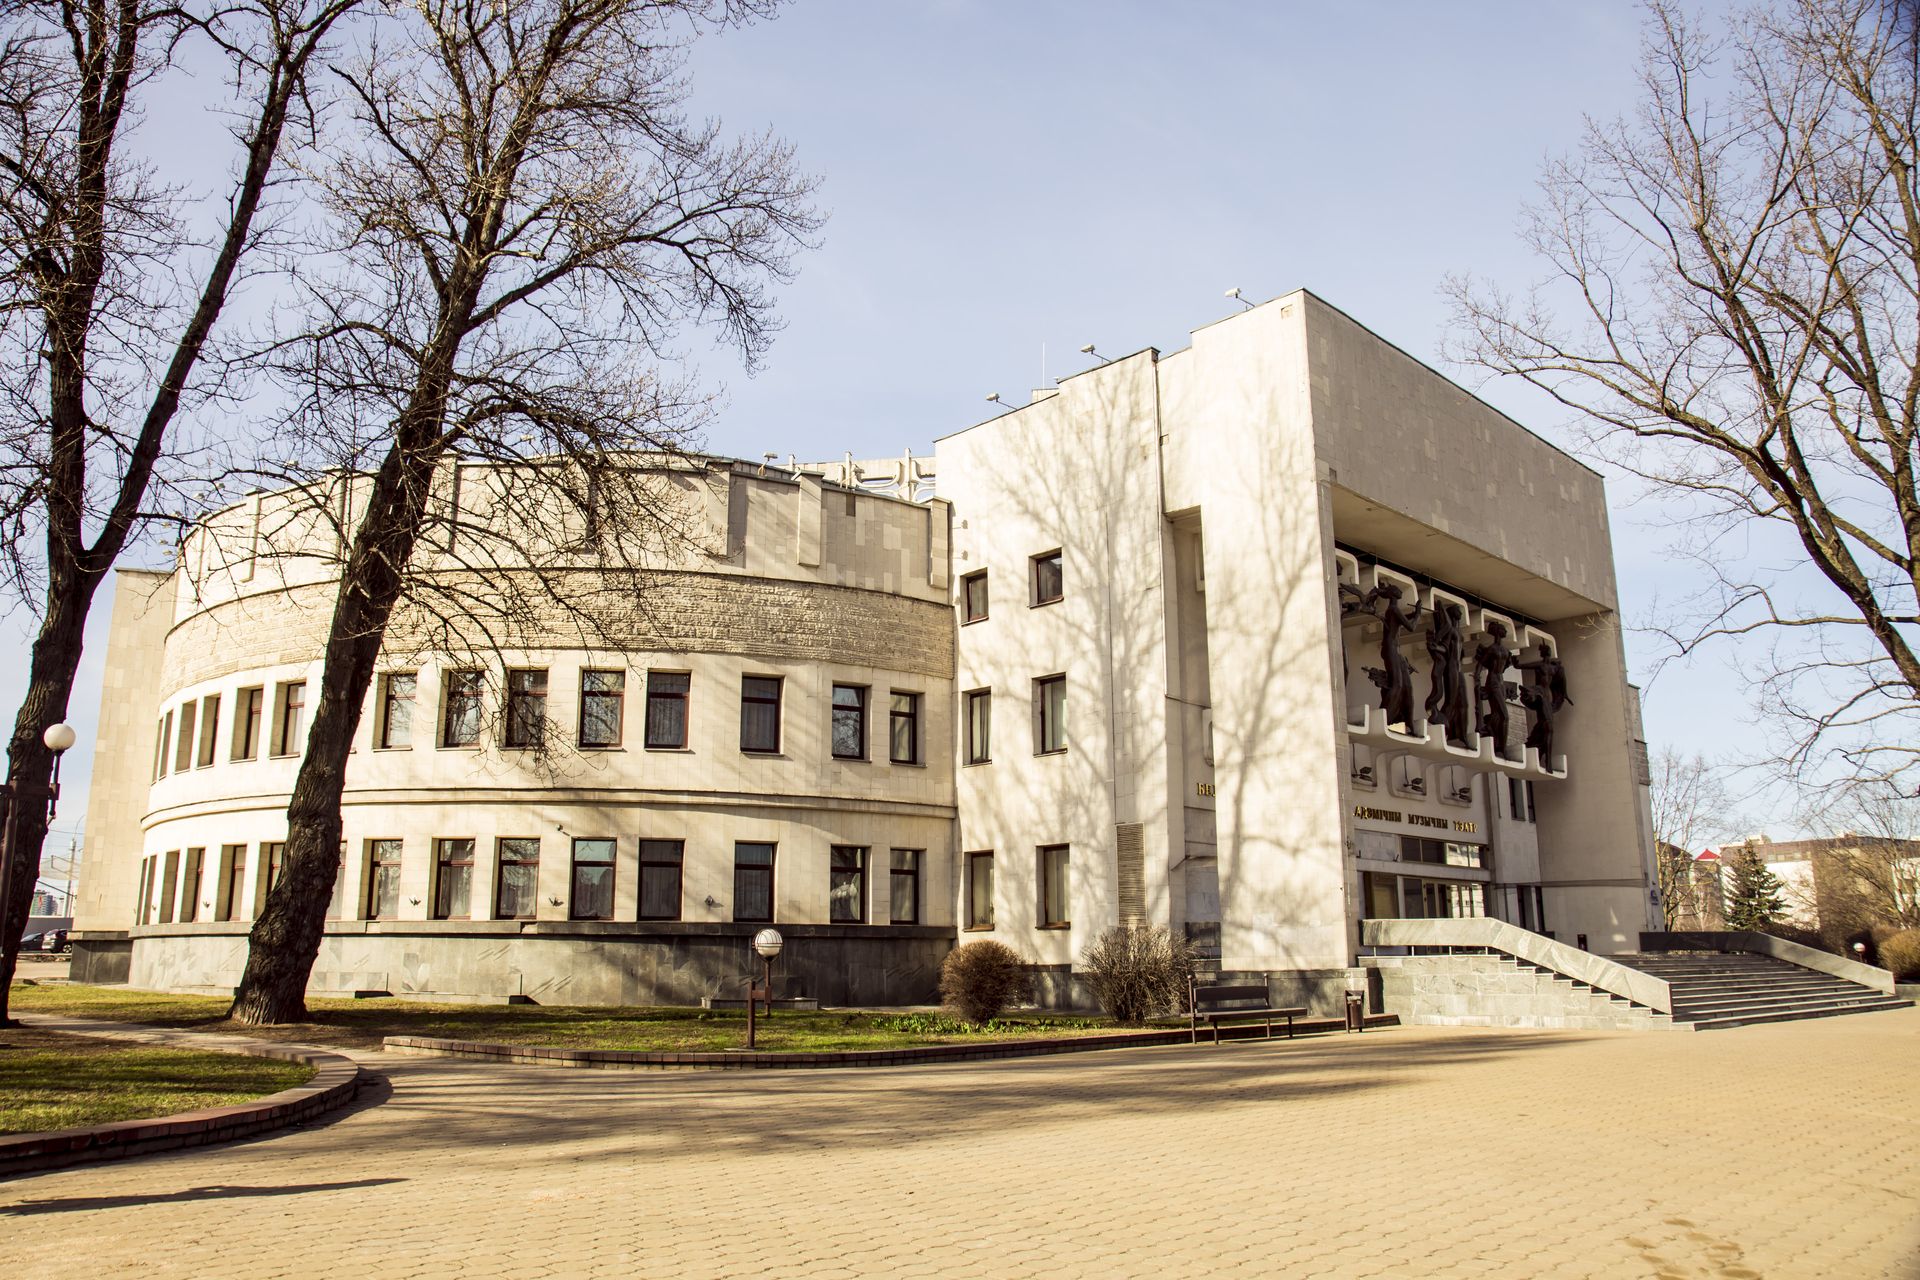 Білоруський державний академічний музичний театр створений в 1970 році, і свій перший театральний сезон відкрився 17 січня 1971 виставою Співає Жайворонок білоруського композитора Юрія Семеняко